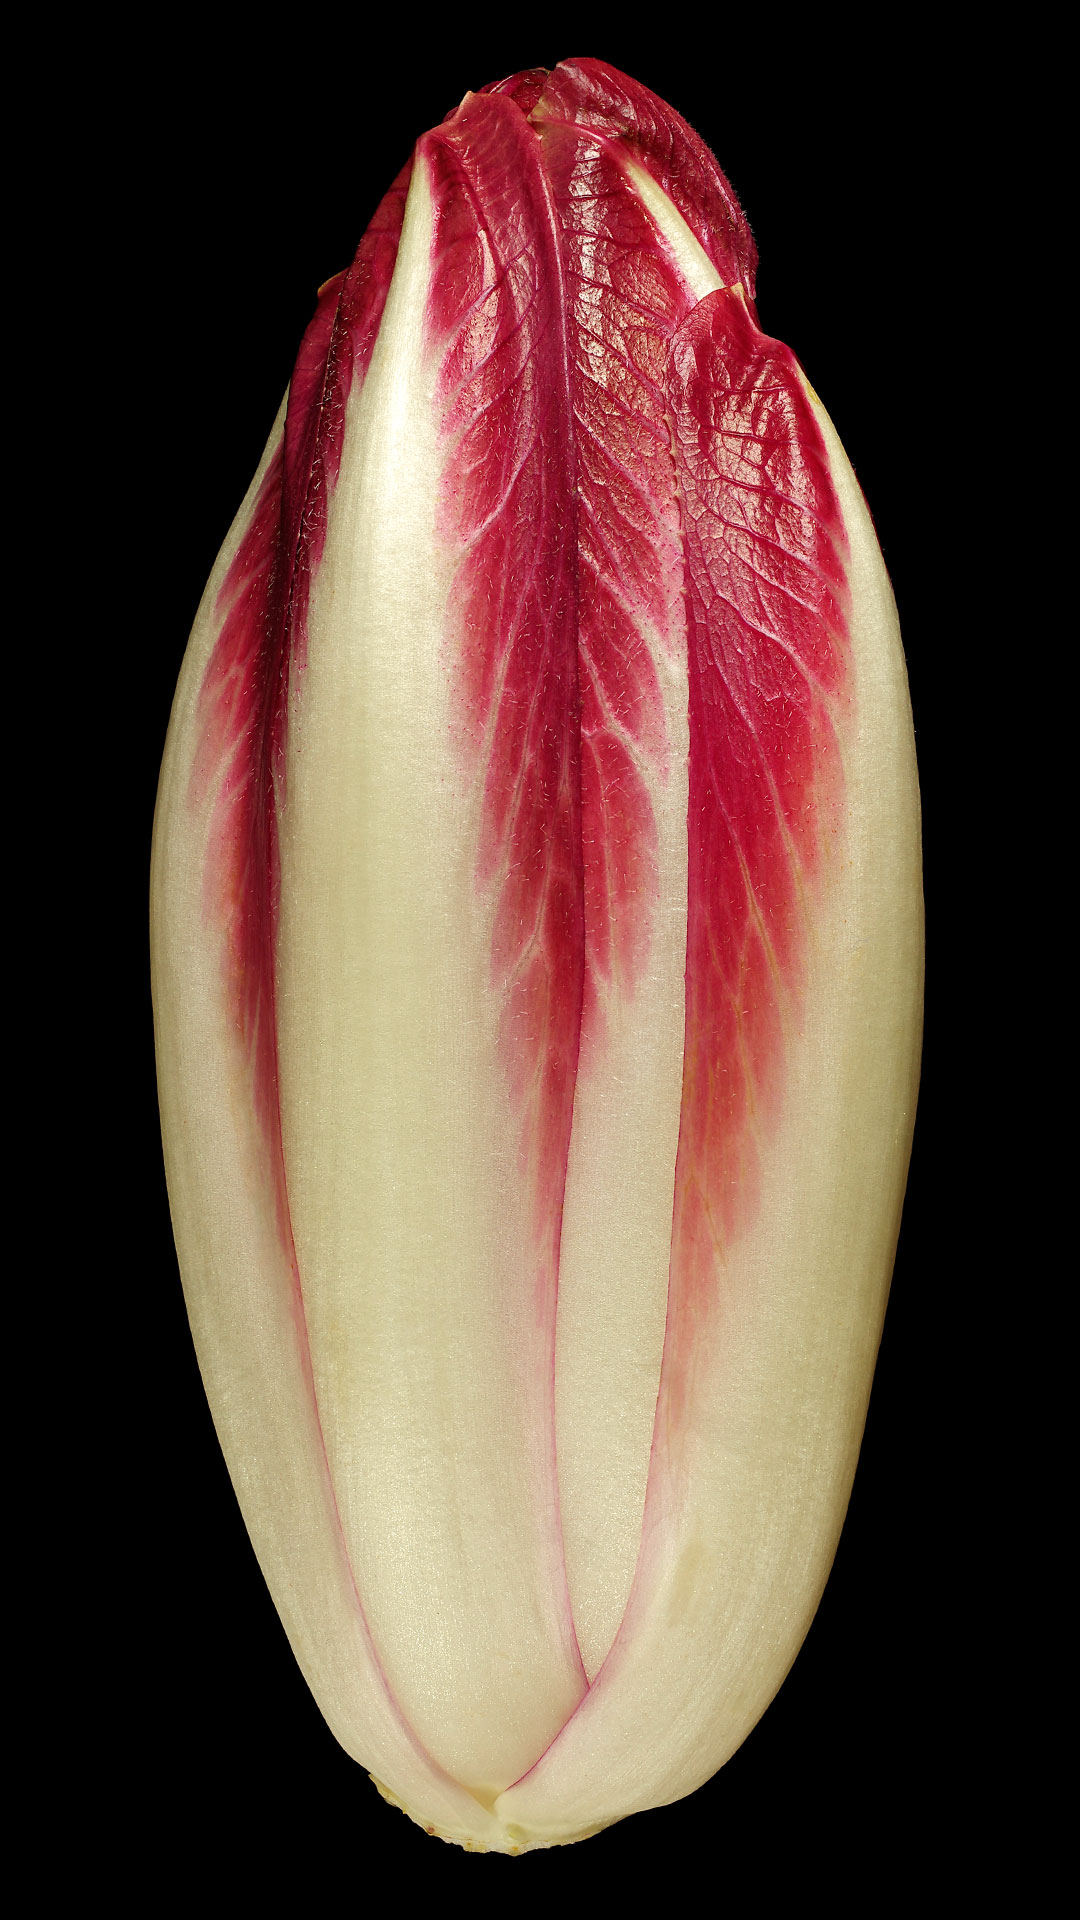 Belgian endive: Cichorium intybus var. foliosum